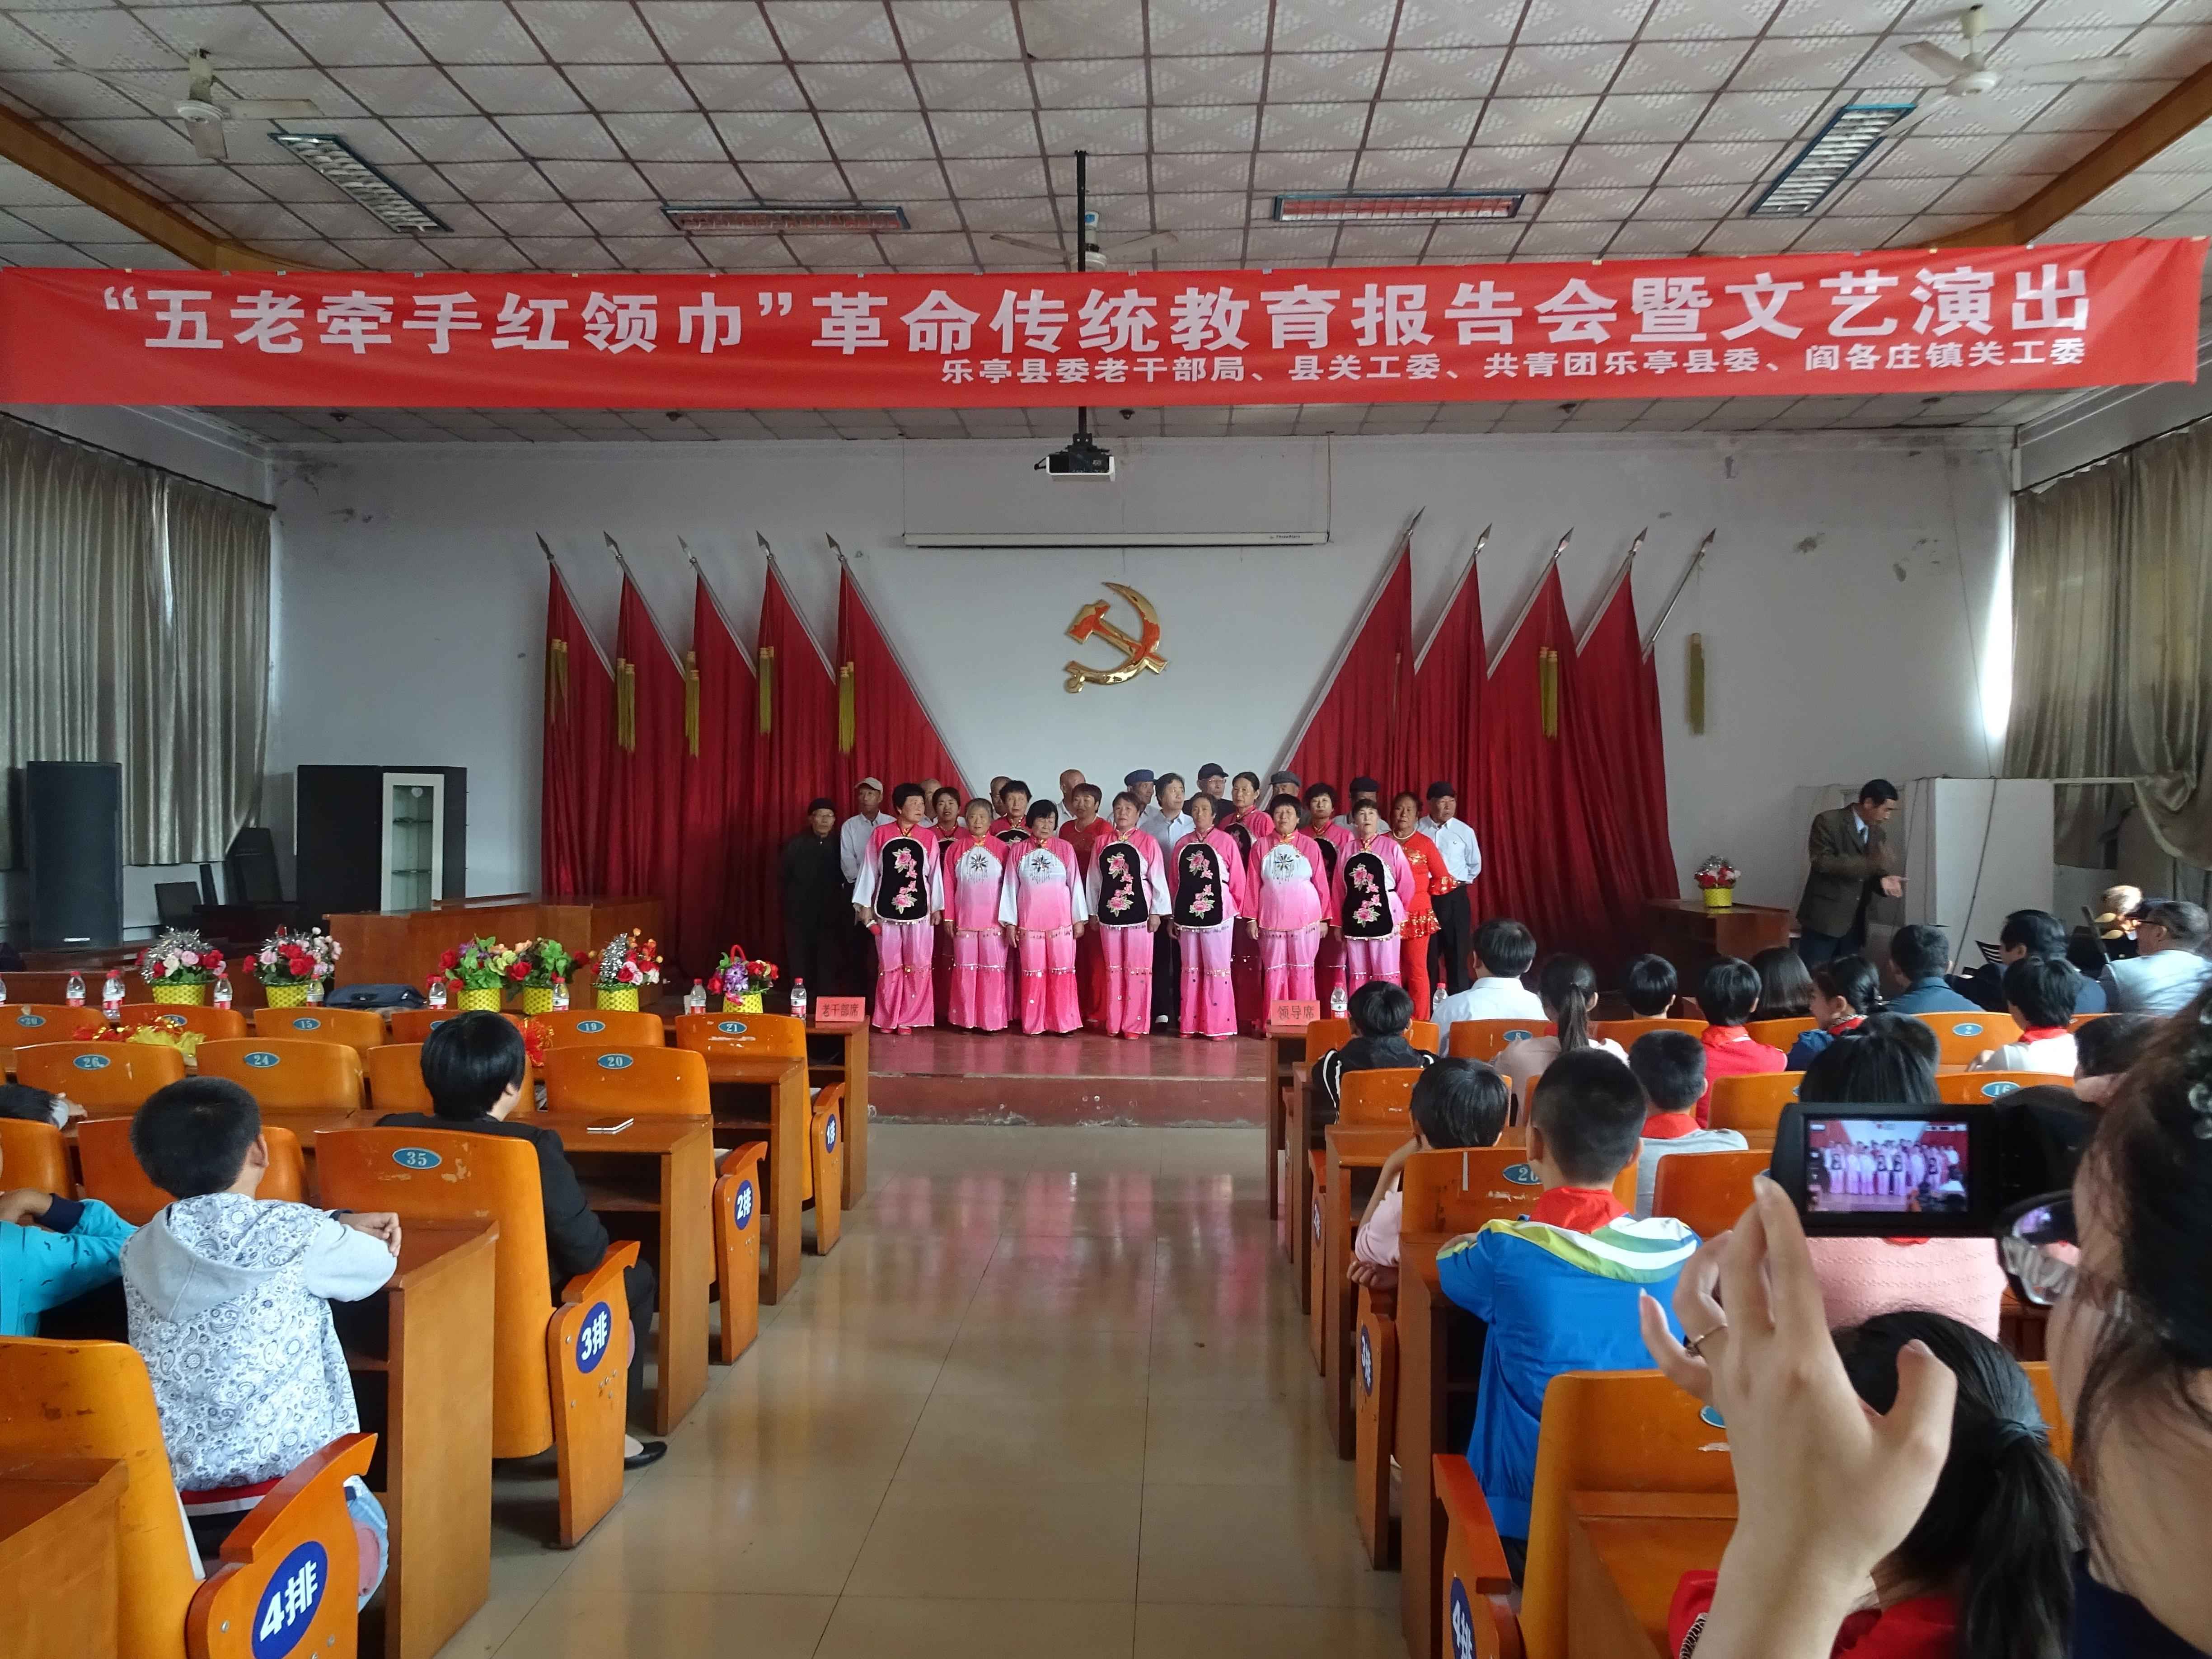 乐亭县关工委在闫各庄镇开展革命传统教育活动。 吴亚敏摄